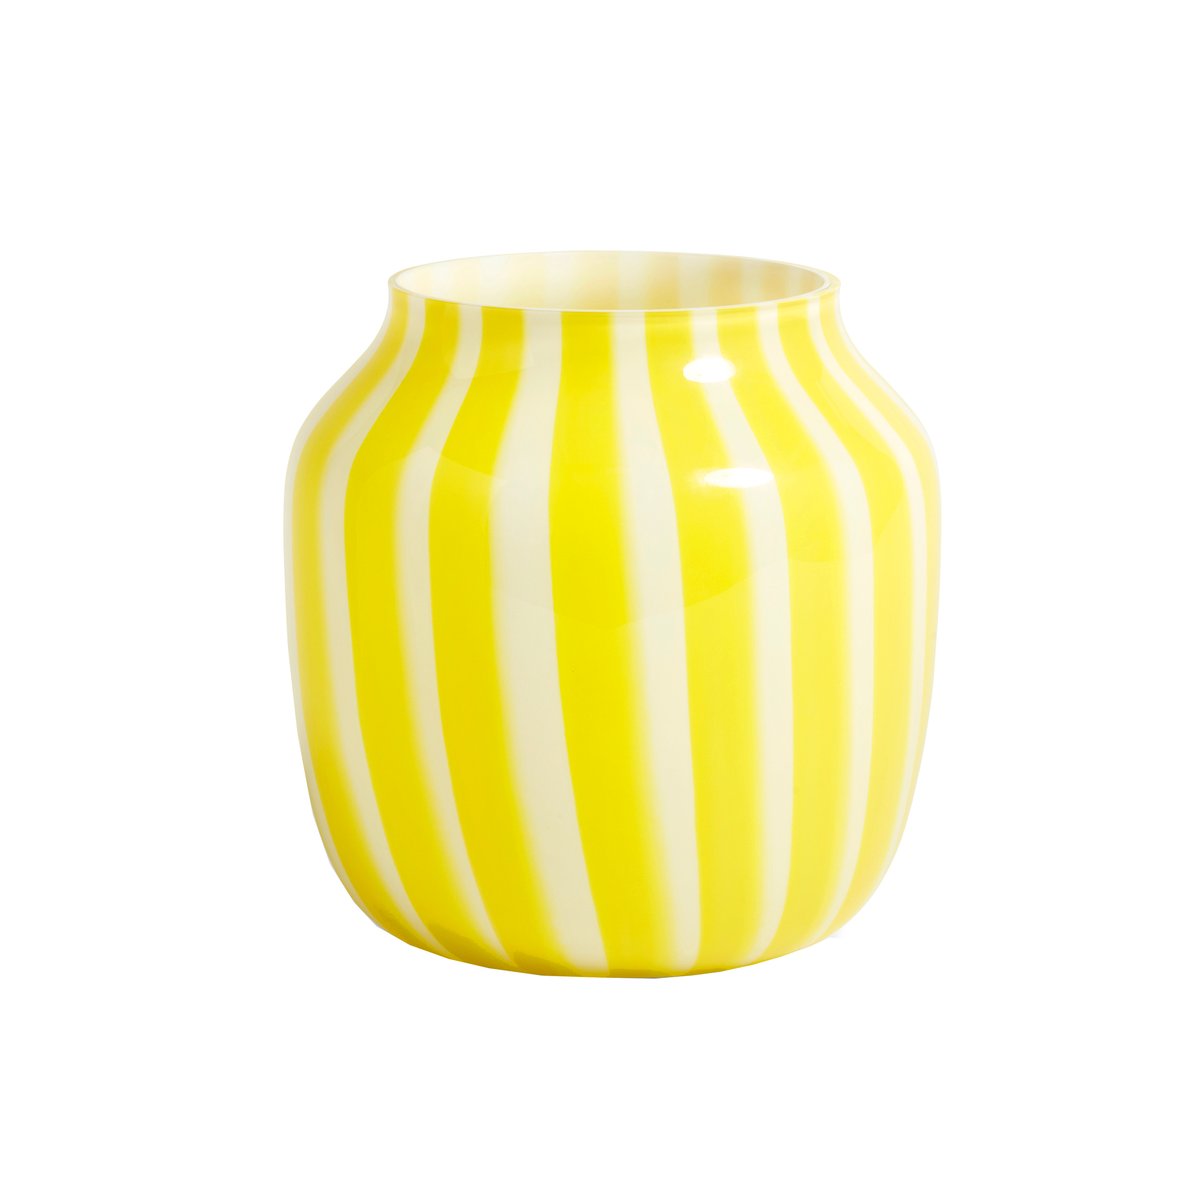 Glasvas med vita och gula ränder. Designer: norska Kristine Five Melvær. Vasen finns att beställa hos Nordic Nest.